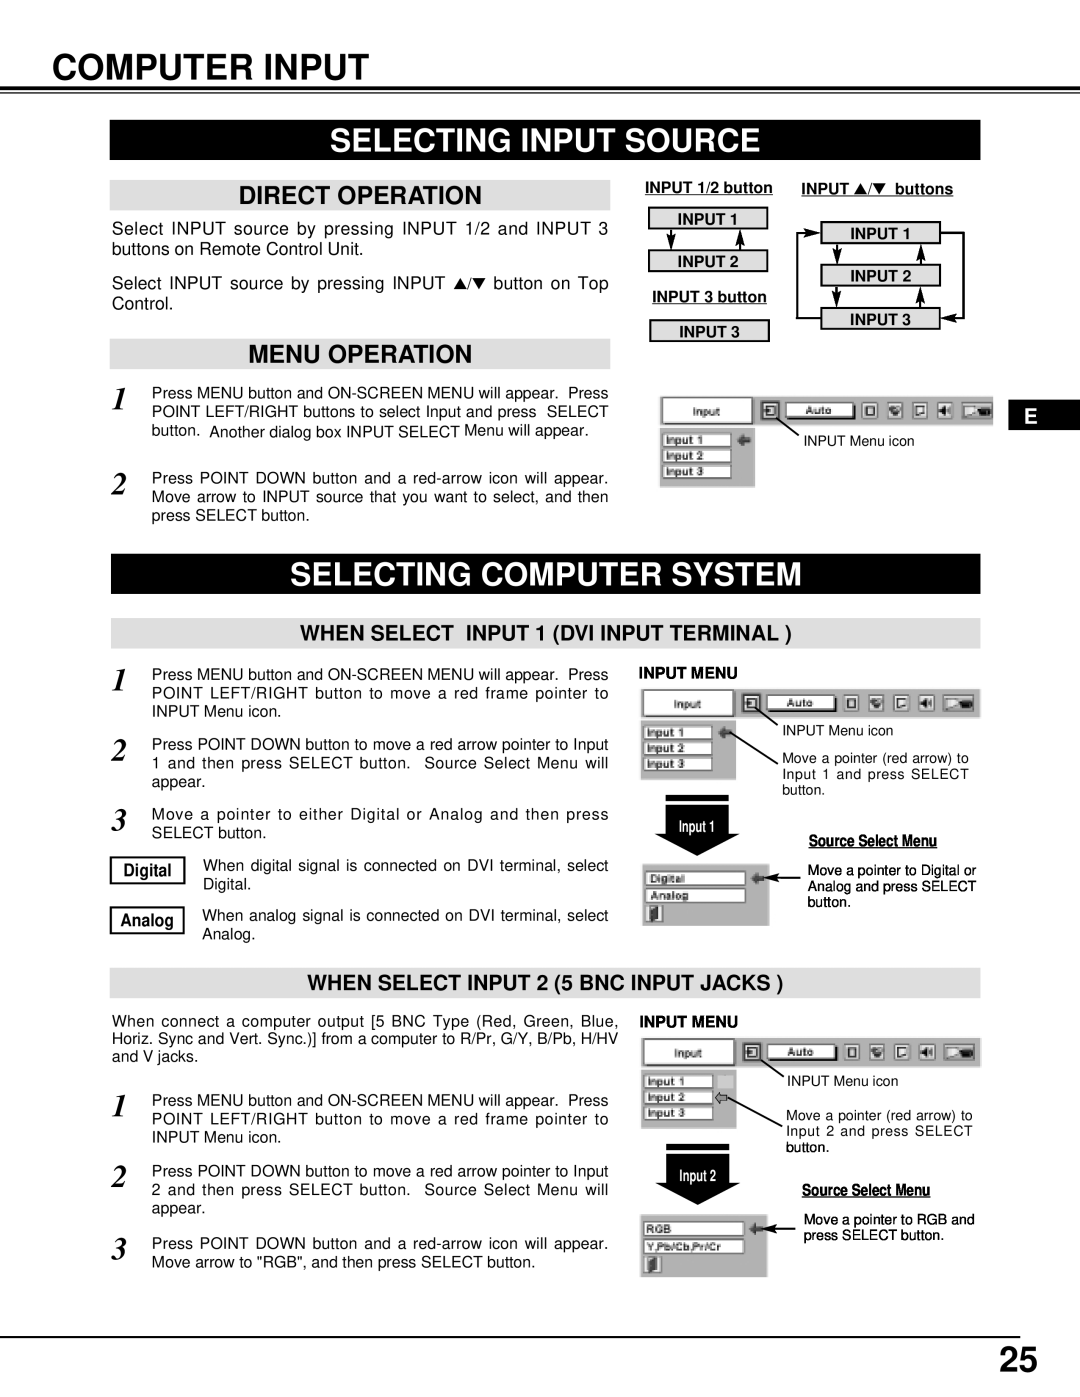 Dukane 28A8945 manual Computer Input, Selecting Input Source, Selecting Computer System, Direct Operation, Menu Operation 